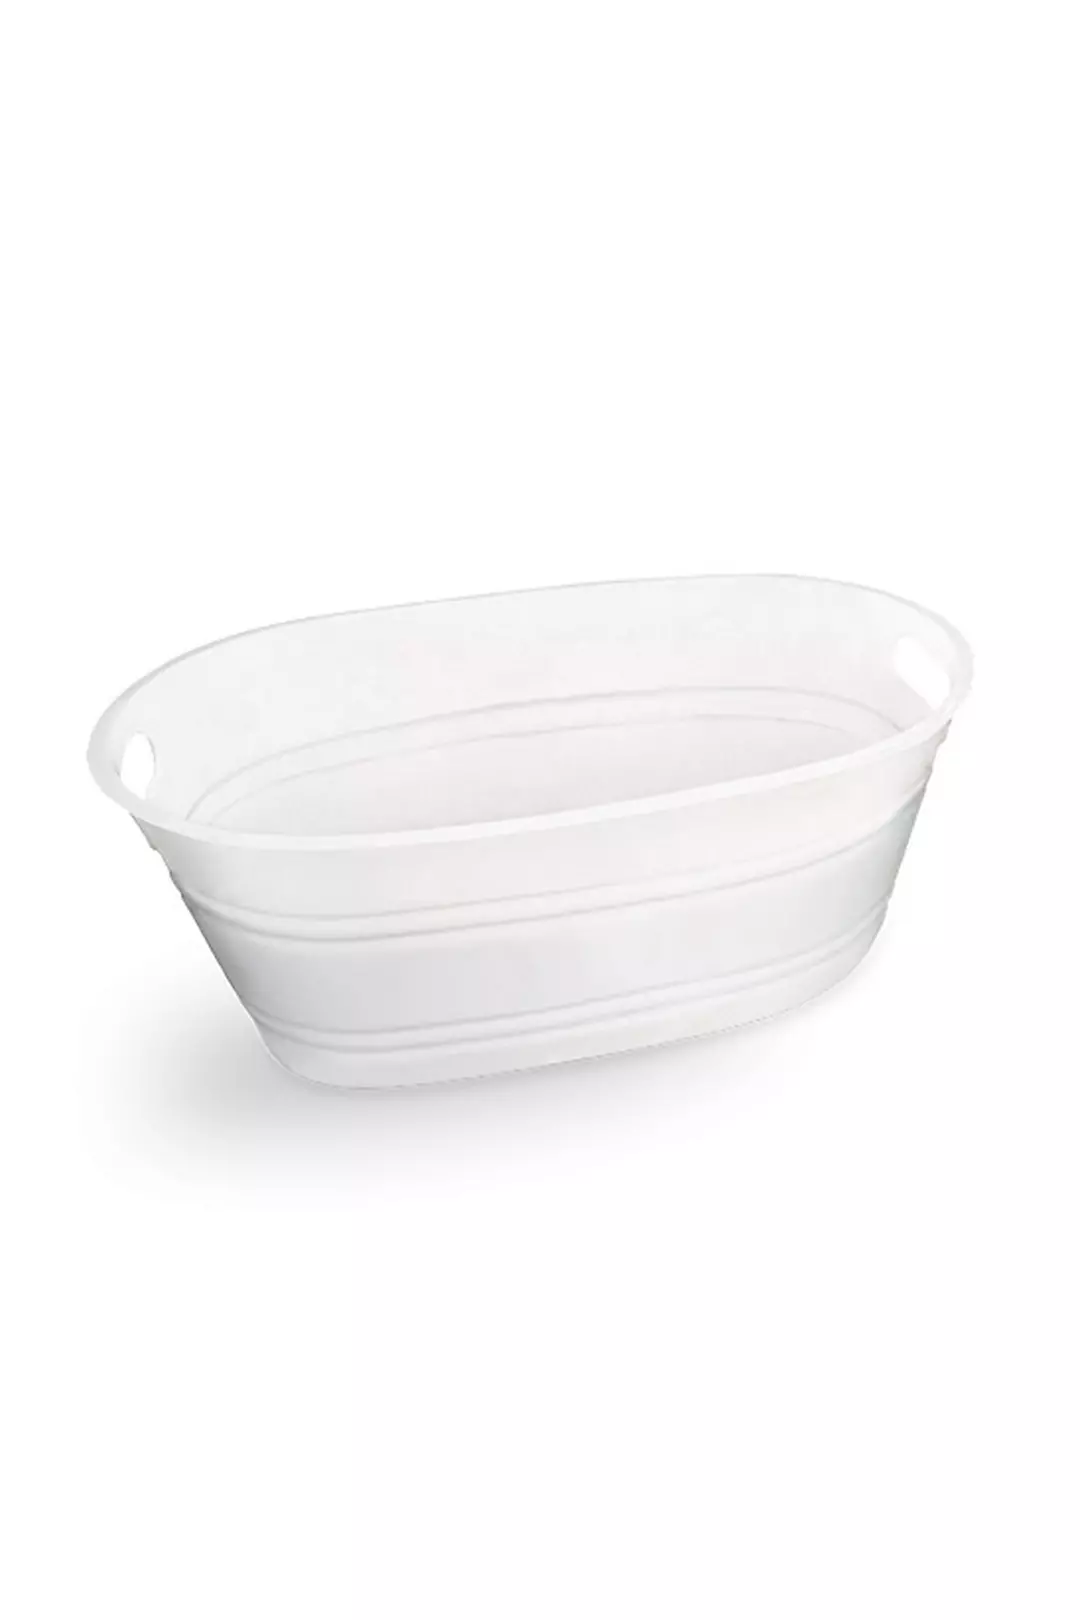 Oval Plastic Tub Image